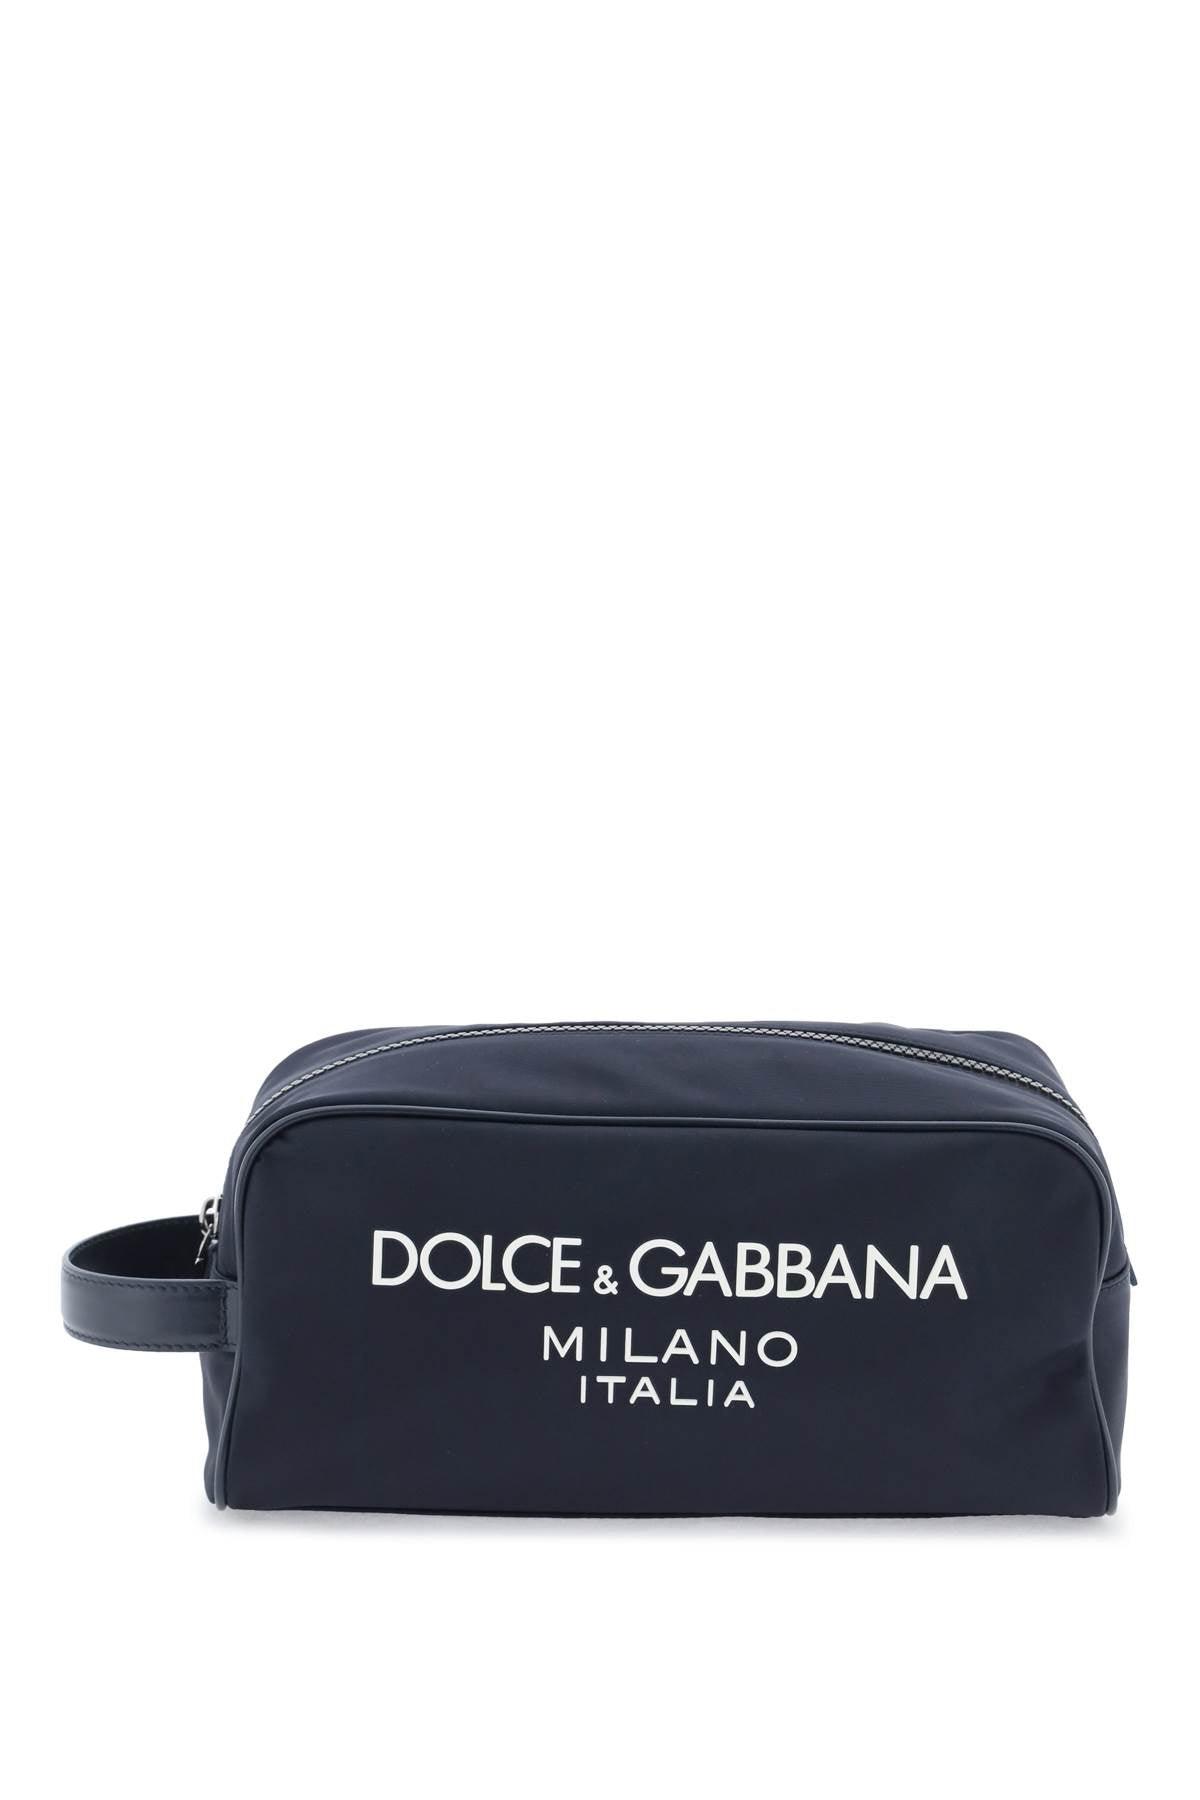 Dolce & Gabbana Rubberized Logo Beauty Case - JOHN JULIA